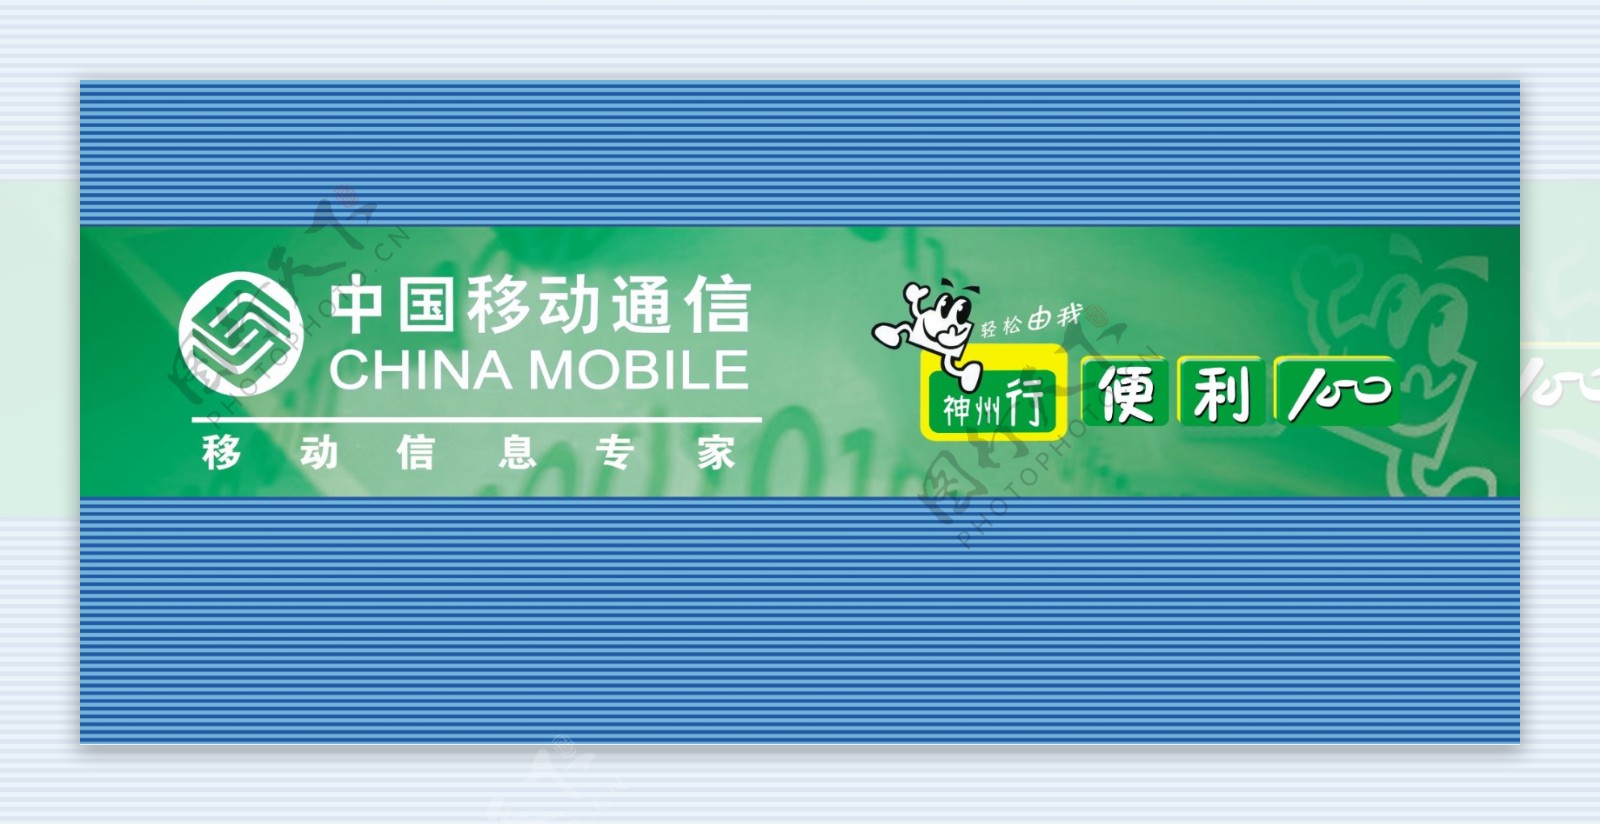 中国移动便利站背景墙图片